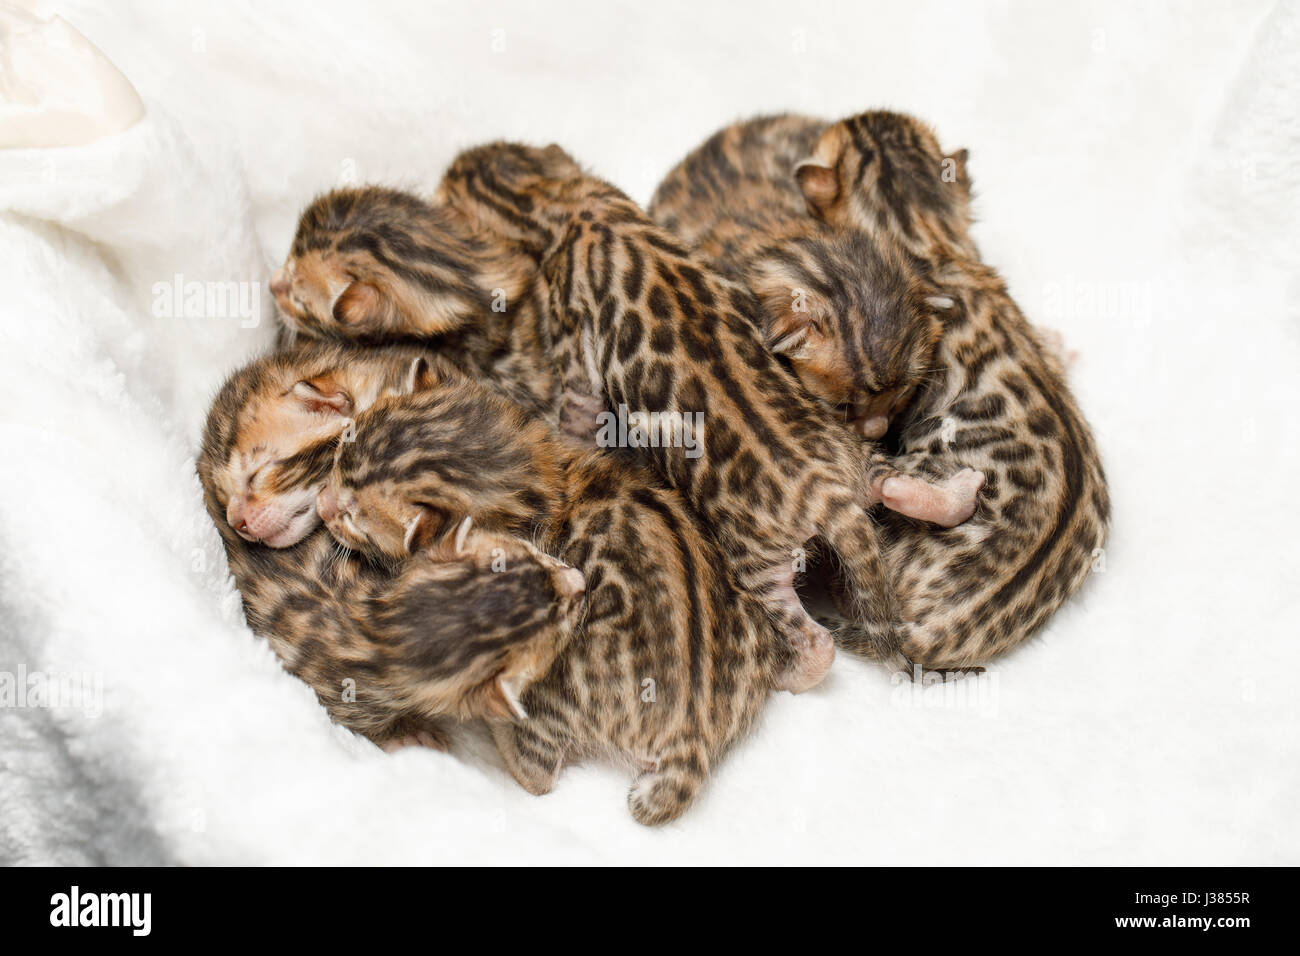 Bengal newborn kittens Stock Photo